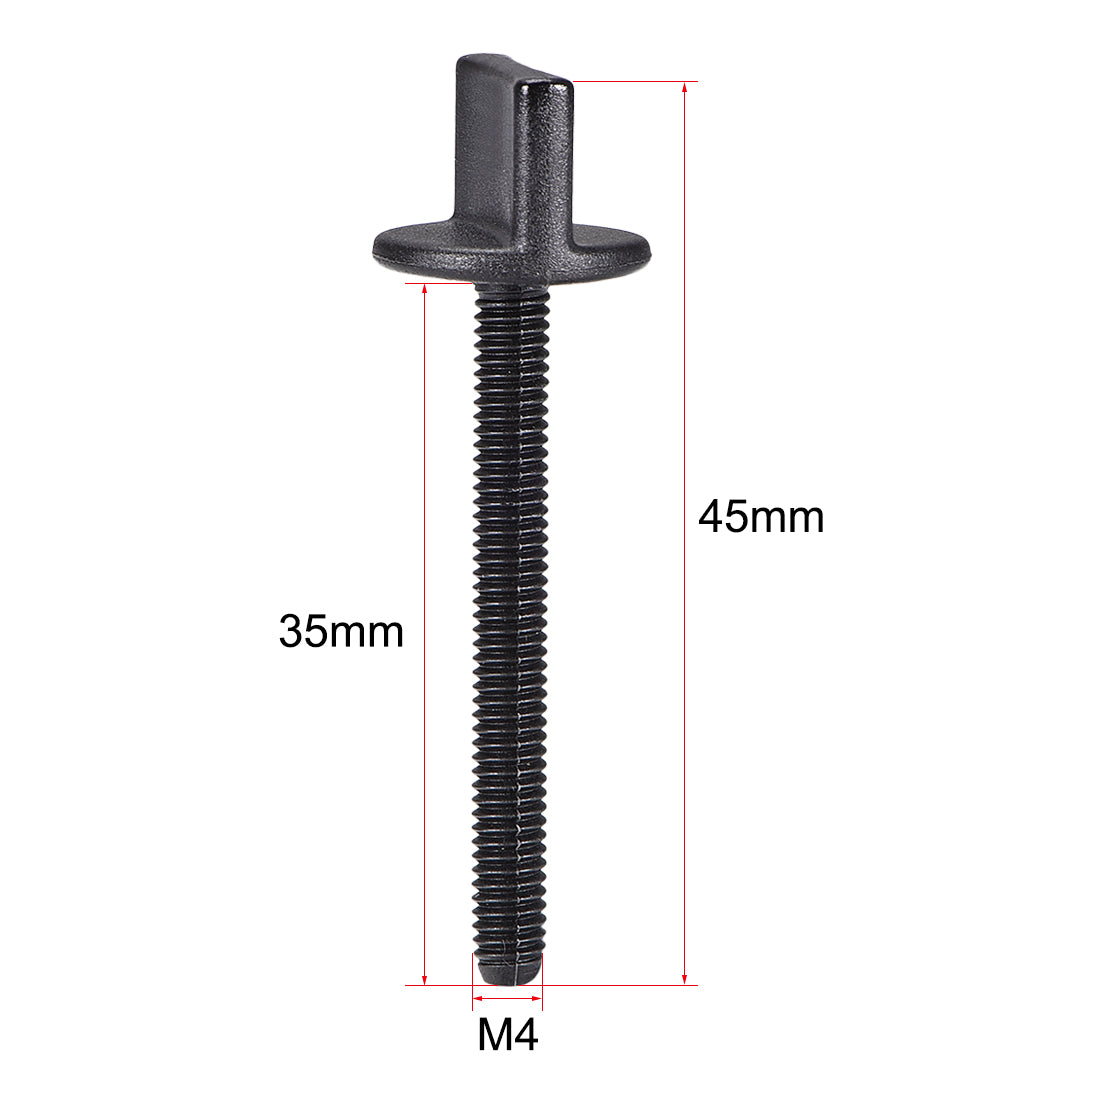 uxcell Uxcell M4 x 35mm Thumb Screw Bolt Nylon Plastic Screws Metric Thread 10 Pcs